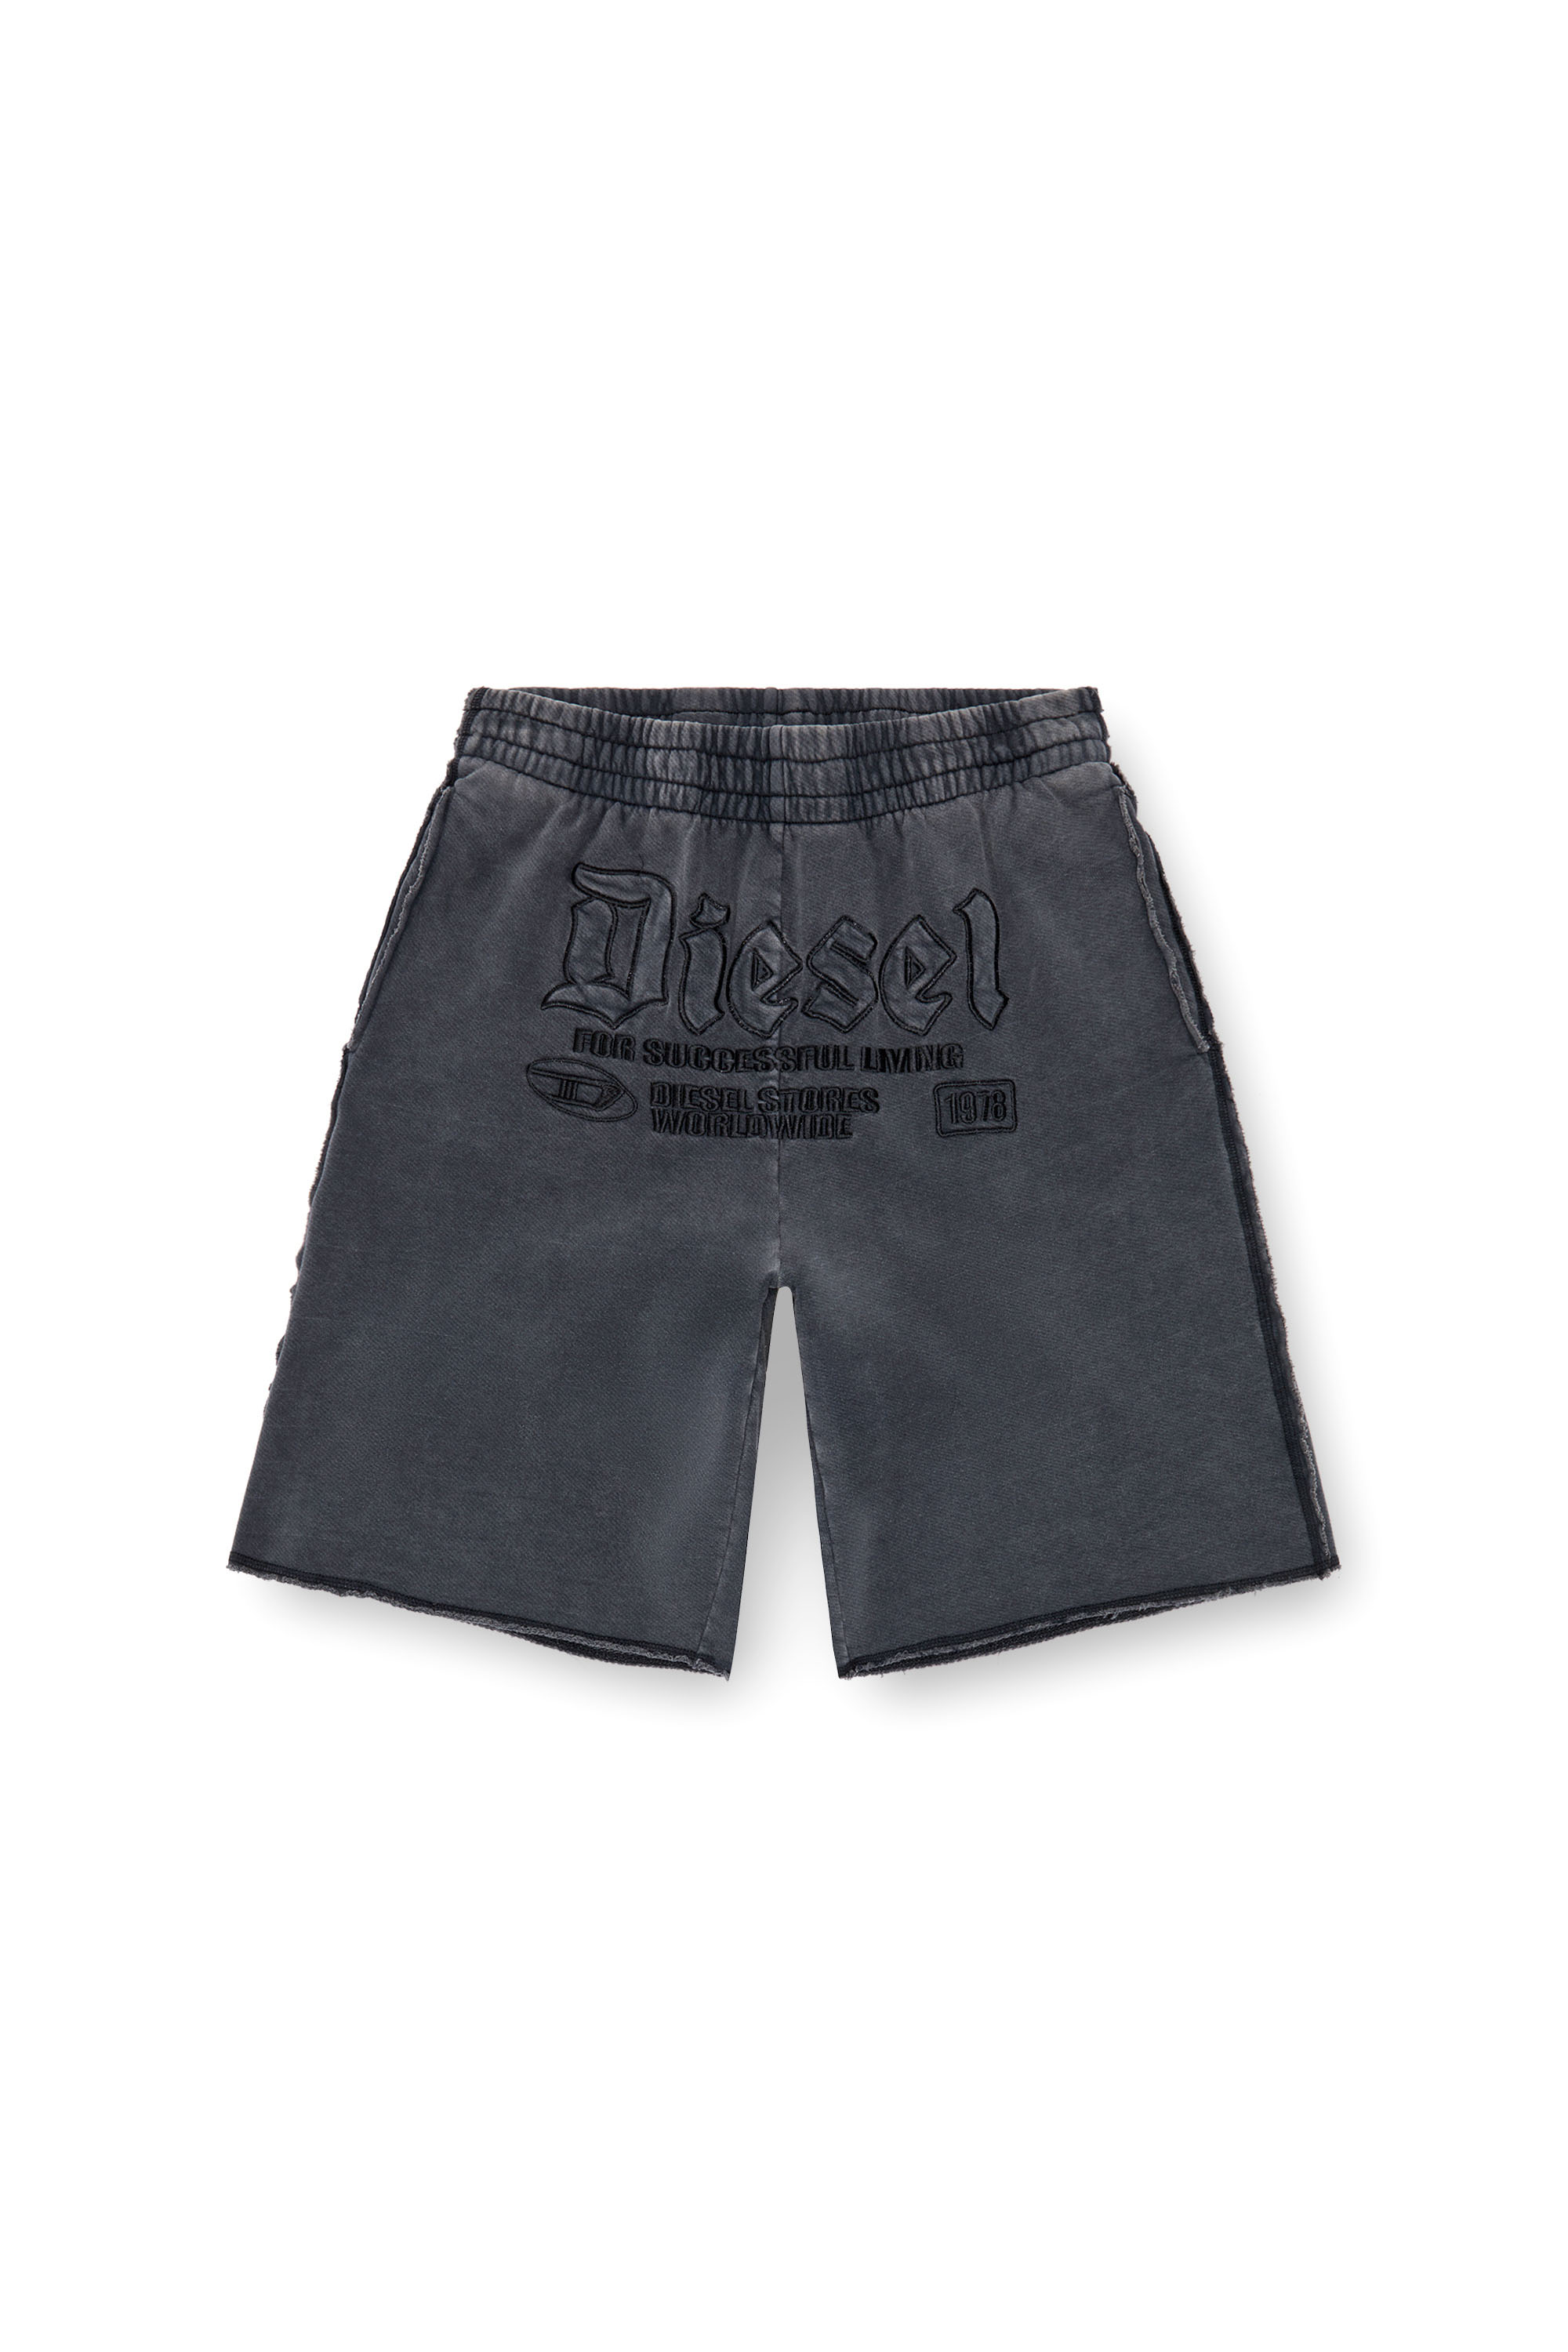 Diesel - P-RAWMARSHY, Hombre Pantalones cortos deportivos con bordado Diesel in Negro - Image 3